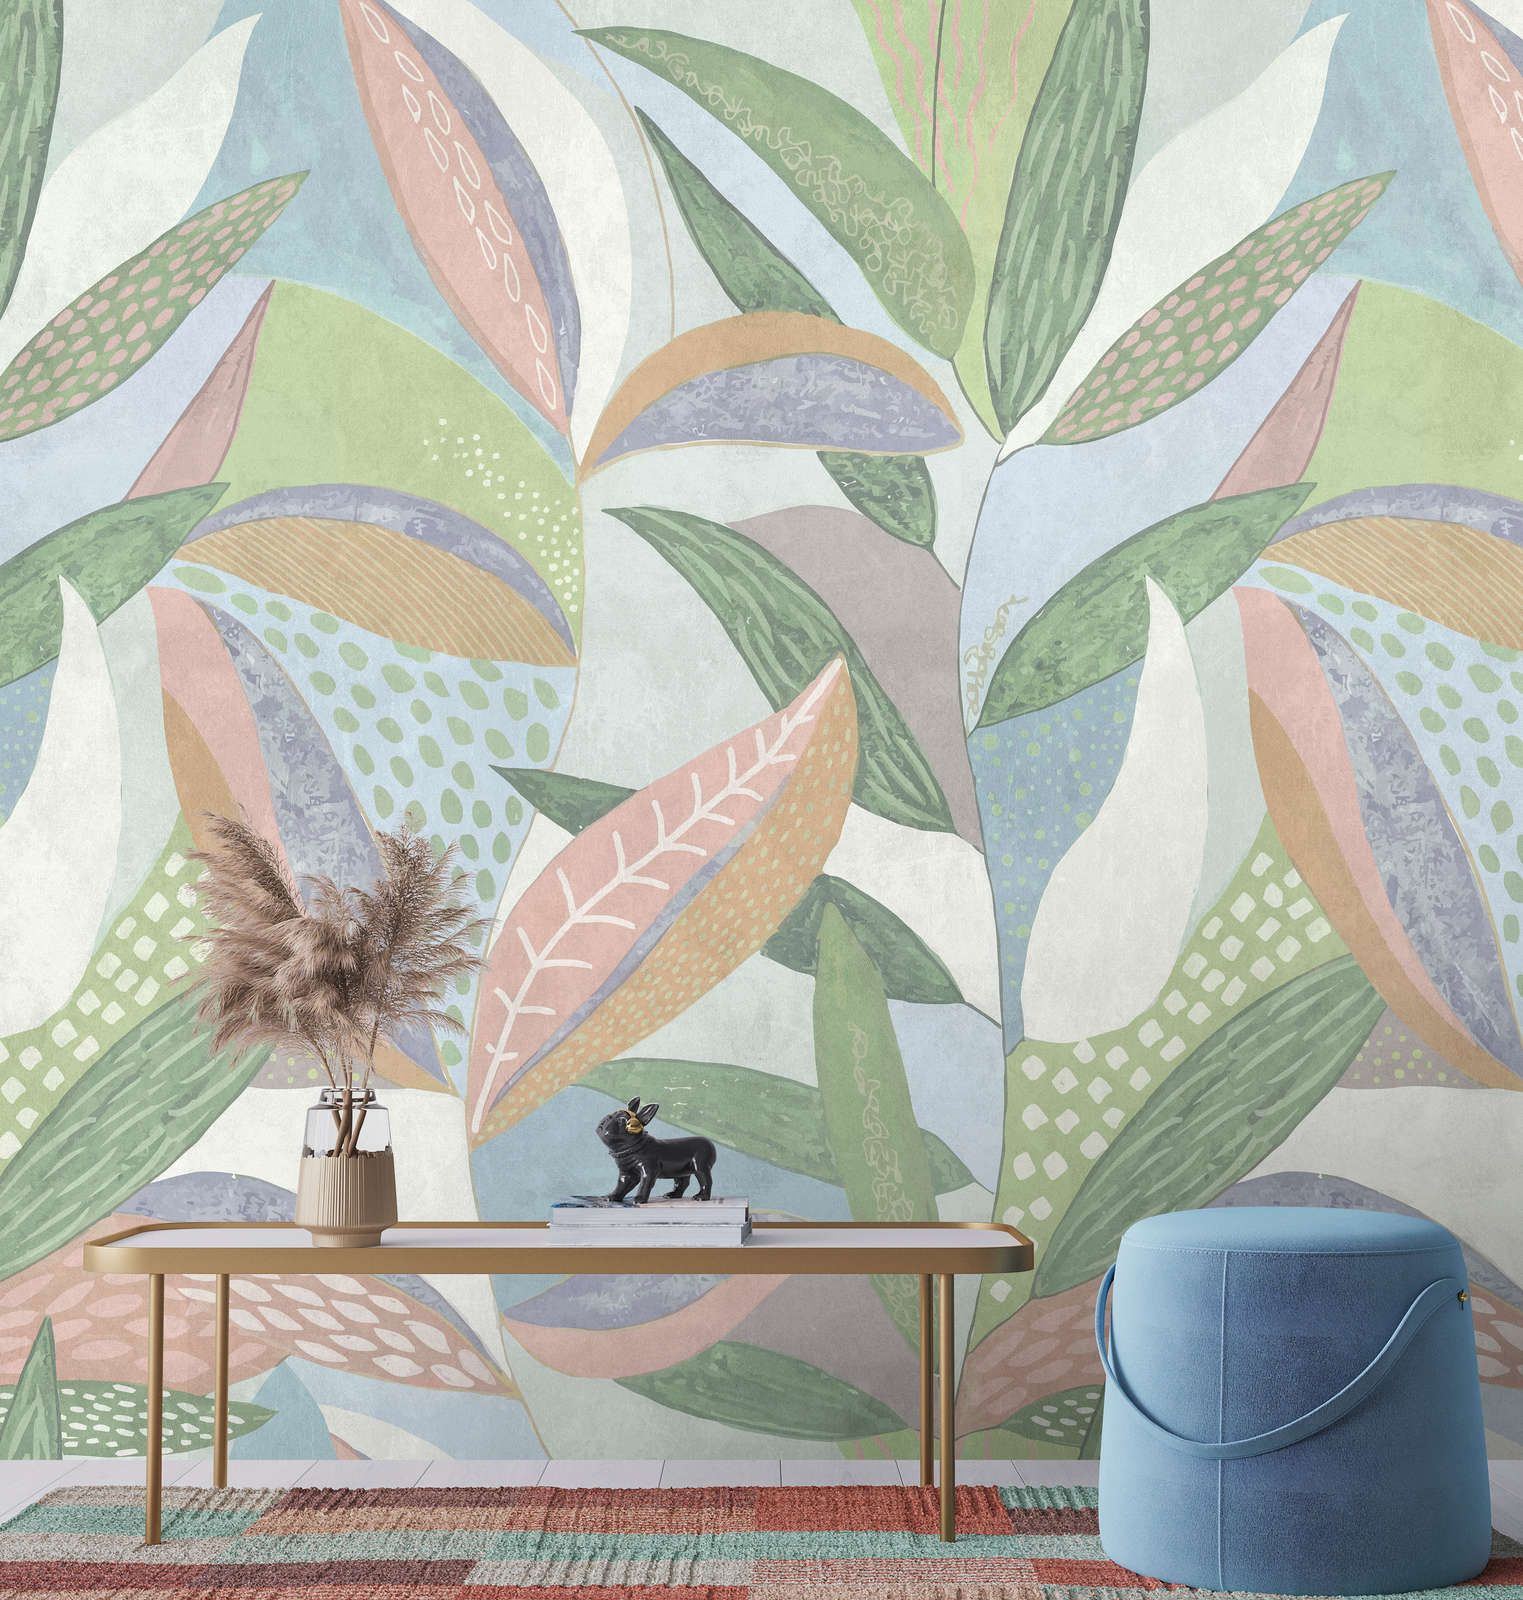             Digital behang »emilia« - Bont pastel bladpatroon voor betonnen pleisterstructuur - groen, blauw, roze | Glad, licht glanzend premium vliesdoek
        